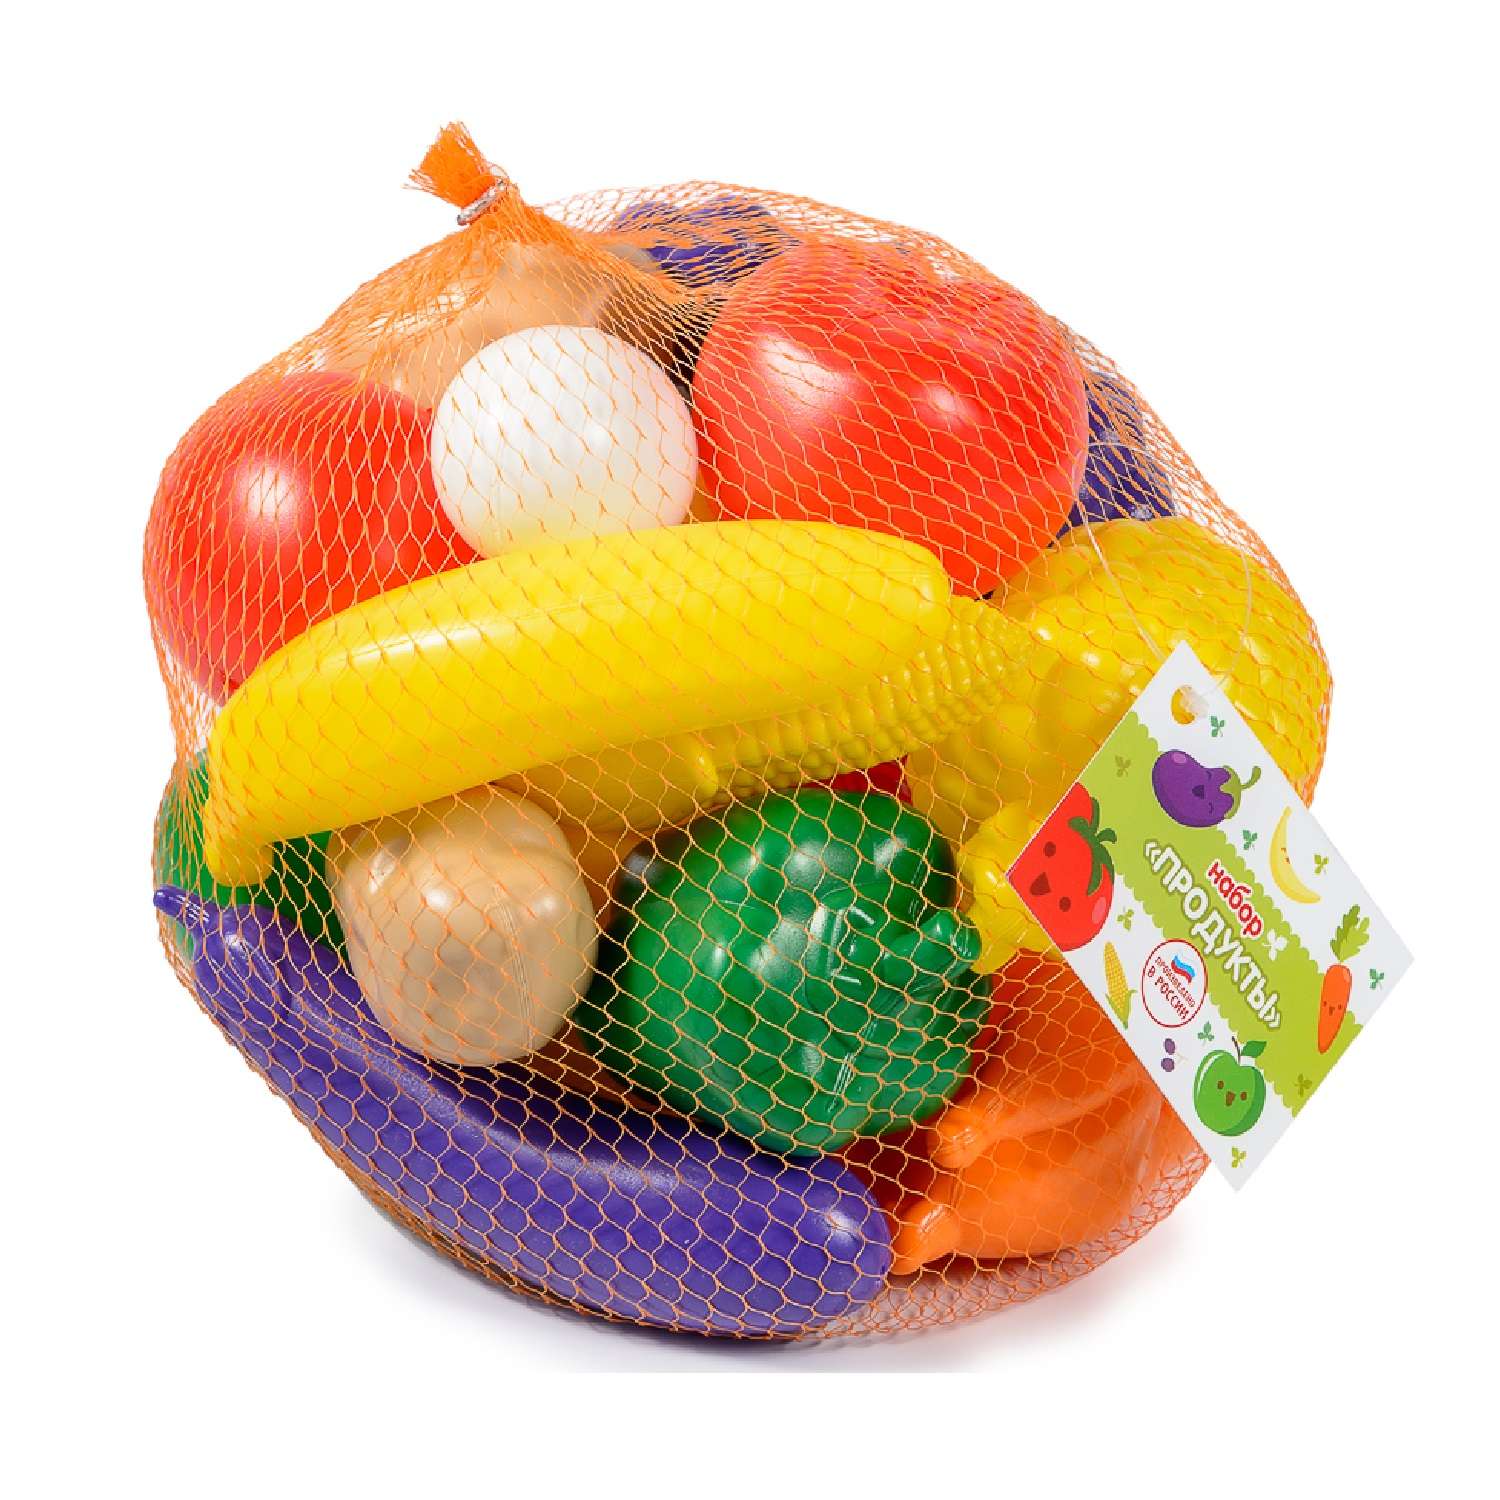 Игровой набор для кухни Green Plast игрушечные овощи фрукты продукты - фото 3